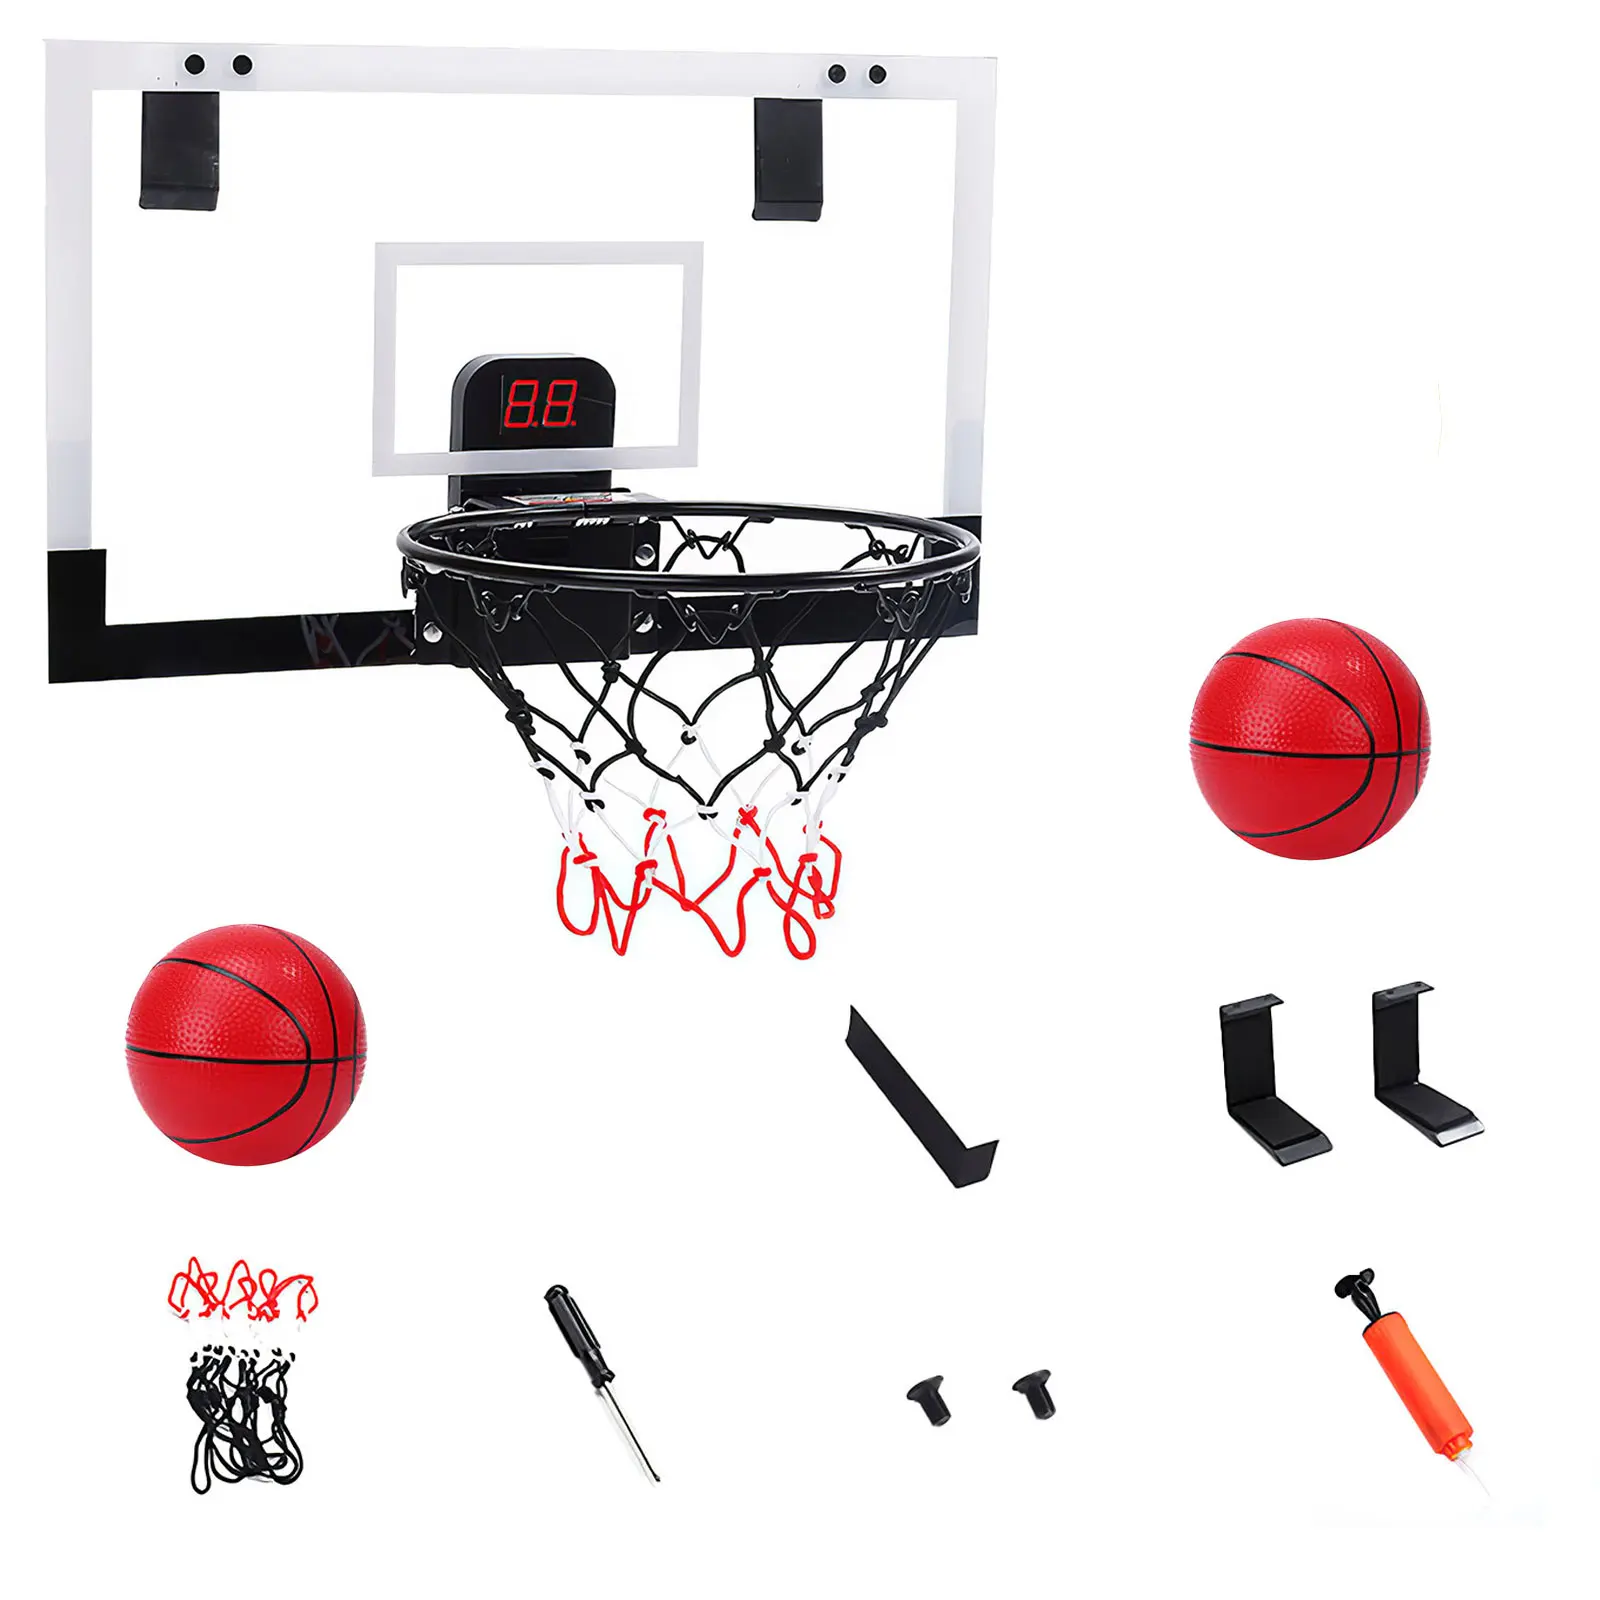 

Баскетбольный обруч с электронной шкалой Веселая баскетбольная обруч для тренировок в помещении простой в установке